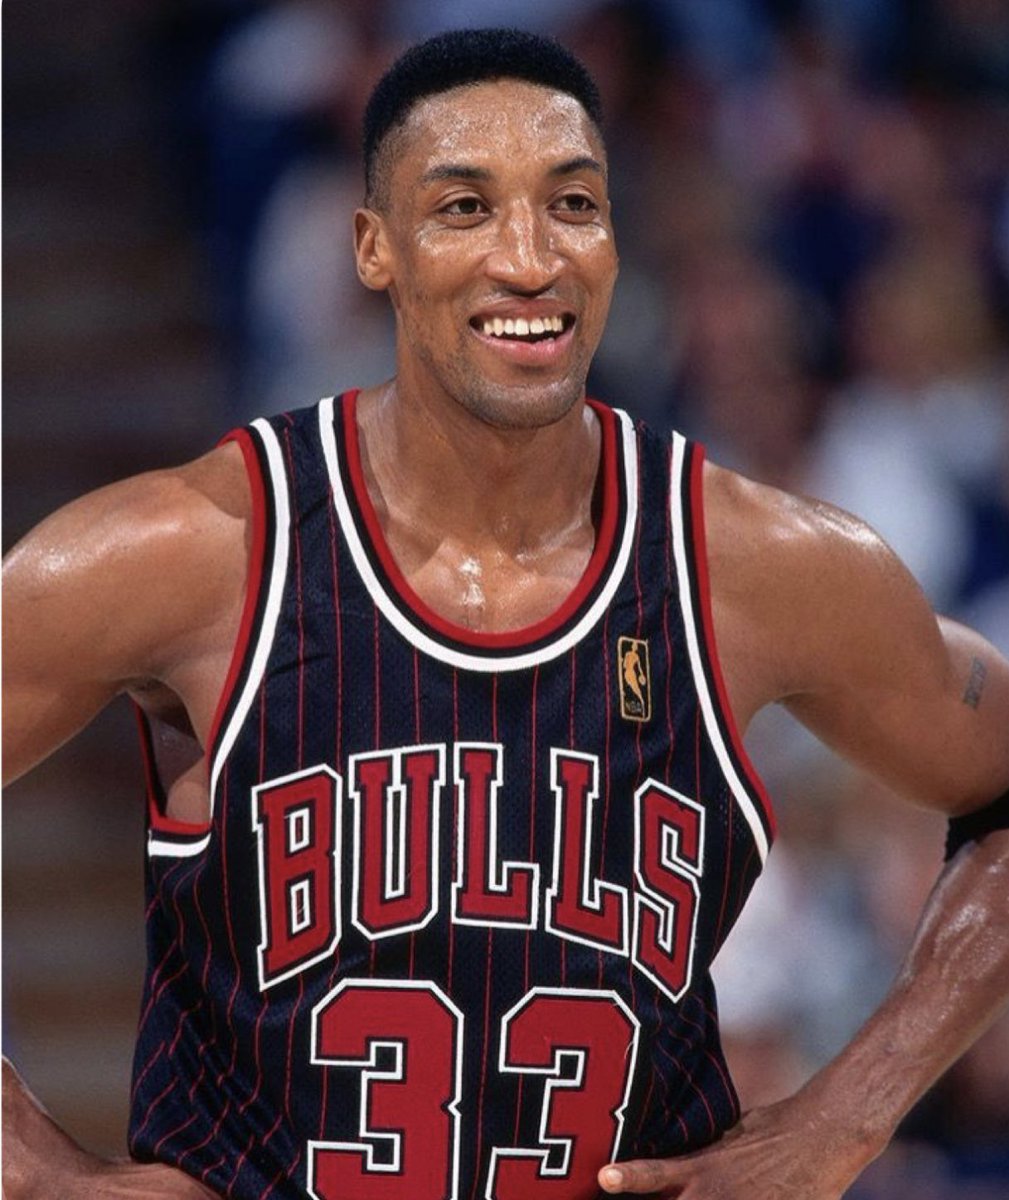 #Bulls Scottie Pippen without Michael Jordan (1993-1994, 1998-2004)

- 12.5 PPG, 4.8 APG, 5.6 RPG
- 1x All-Star (1994)
- 1x All-Star MVP
- 1x All-#NBA
- 1x All-Defense 1st Team (1999)